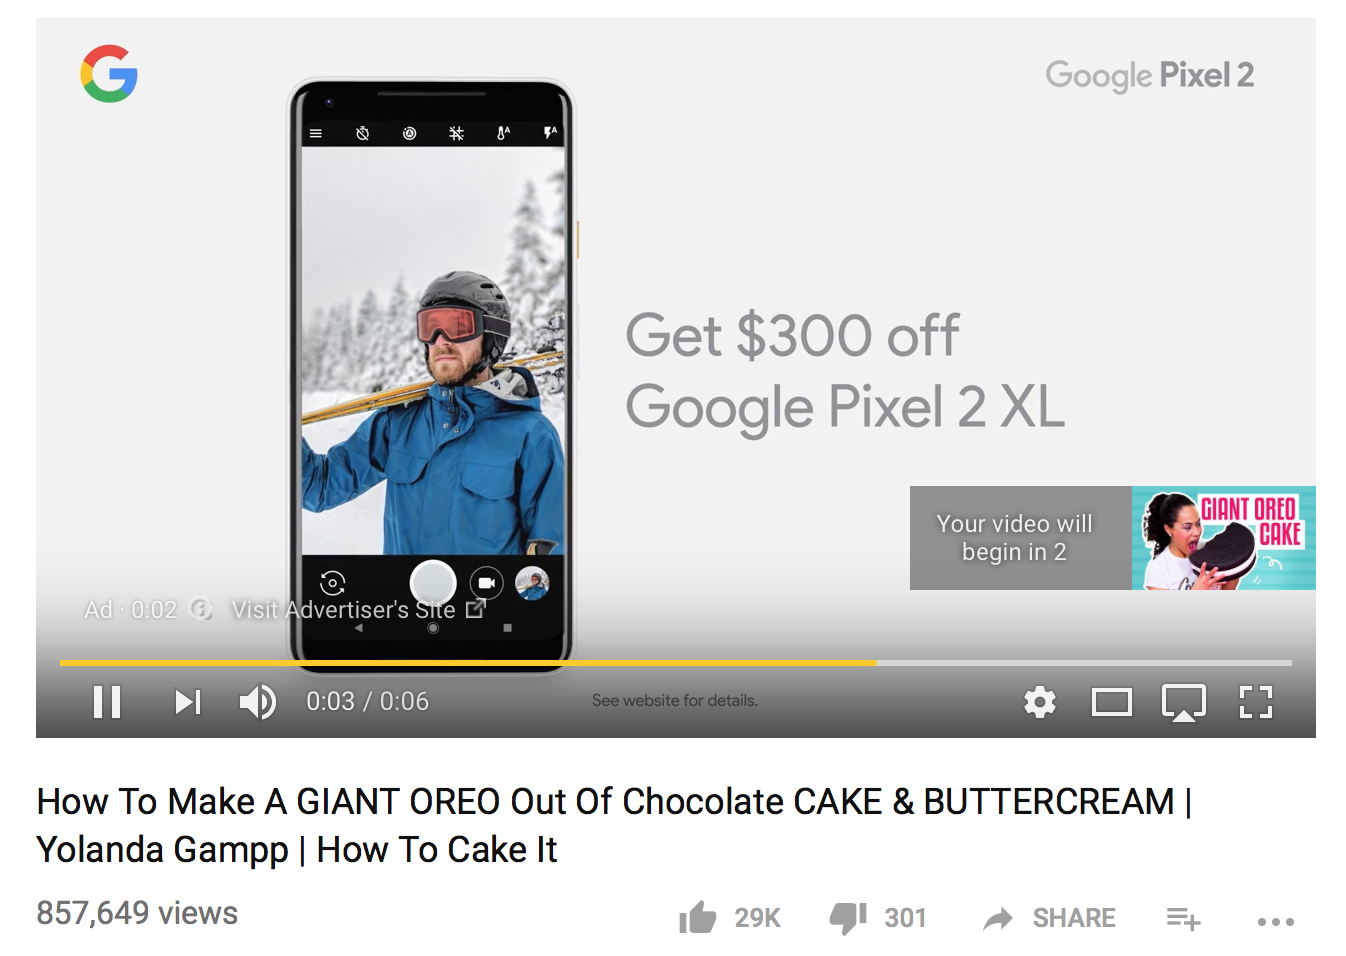 youtube bumper ads